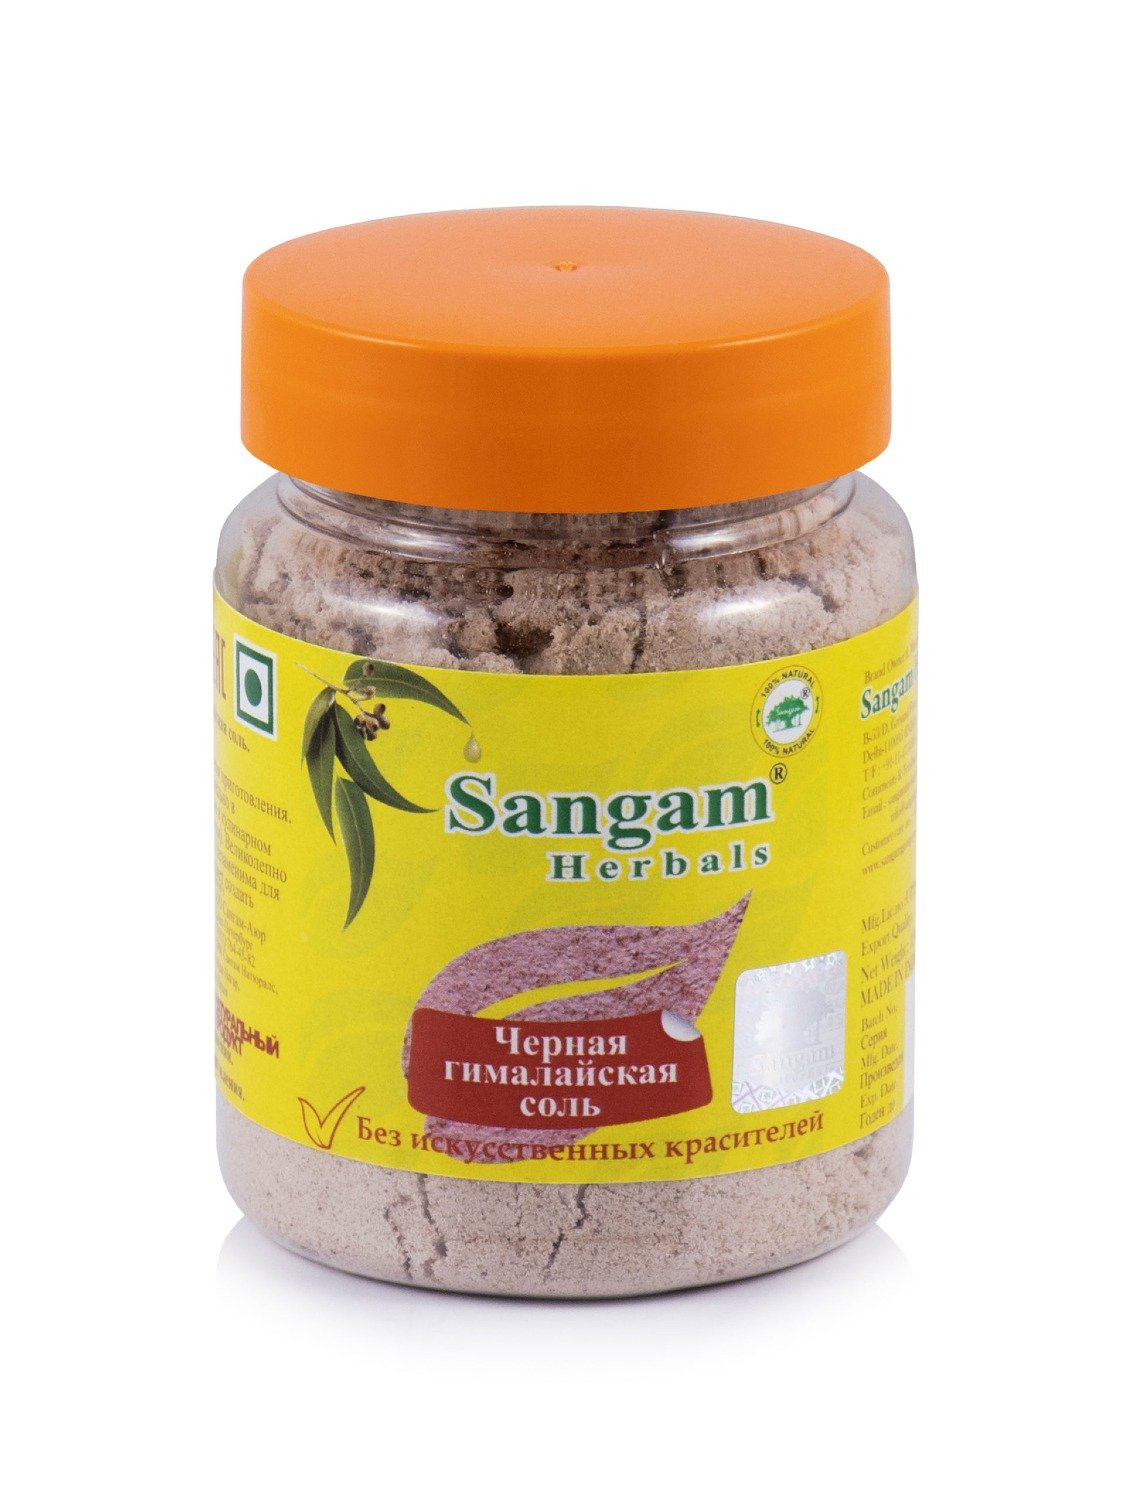 Черная гималайская соль Sangam Herbals (120 г). 